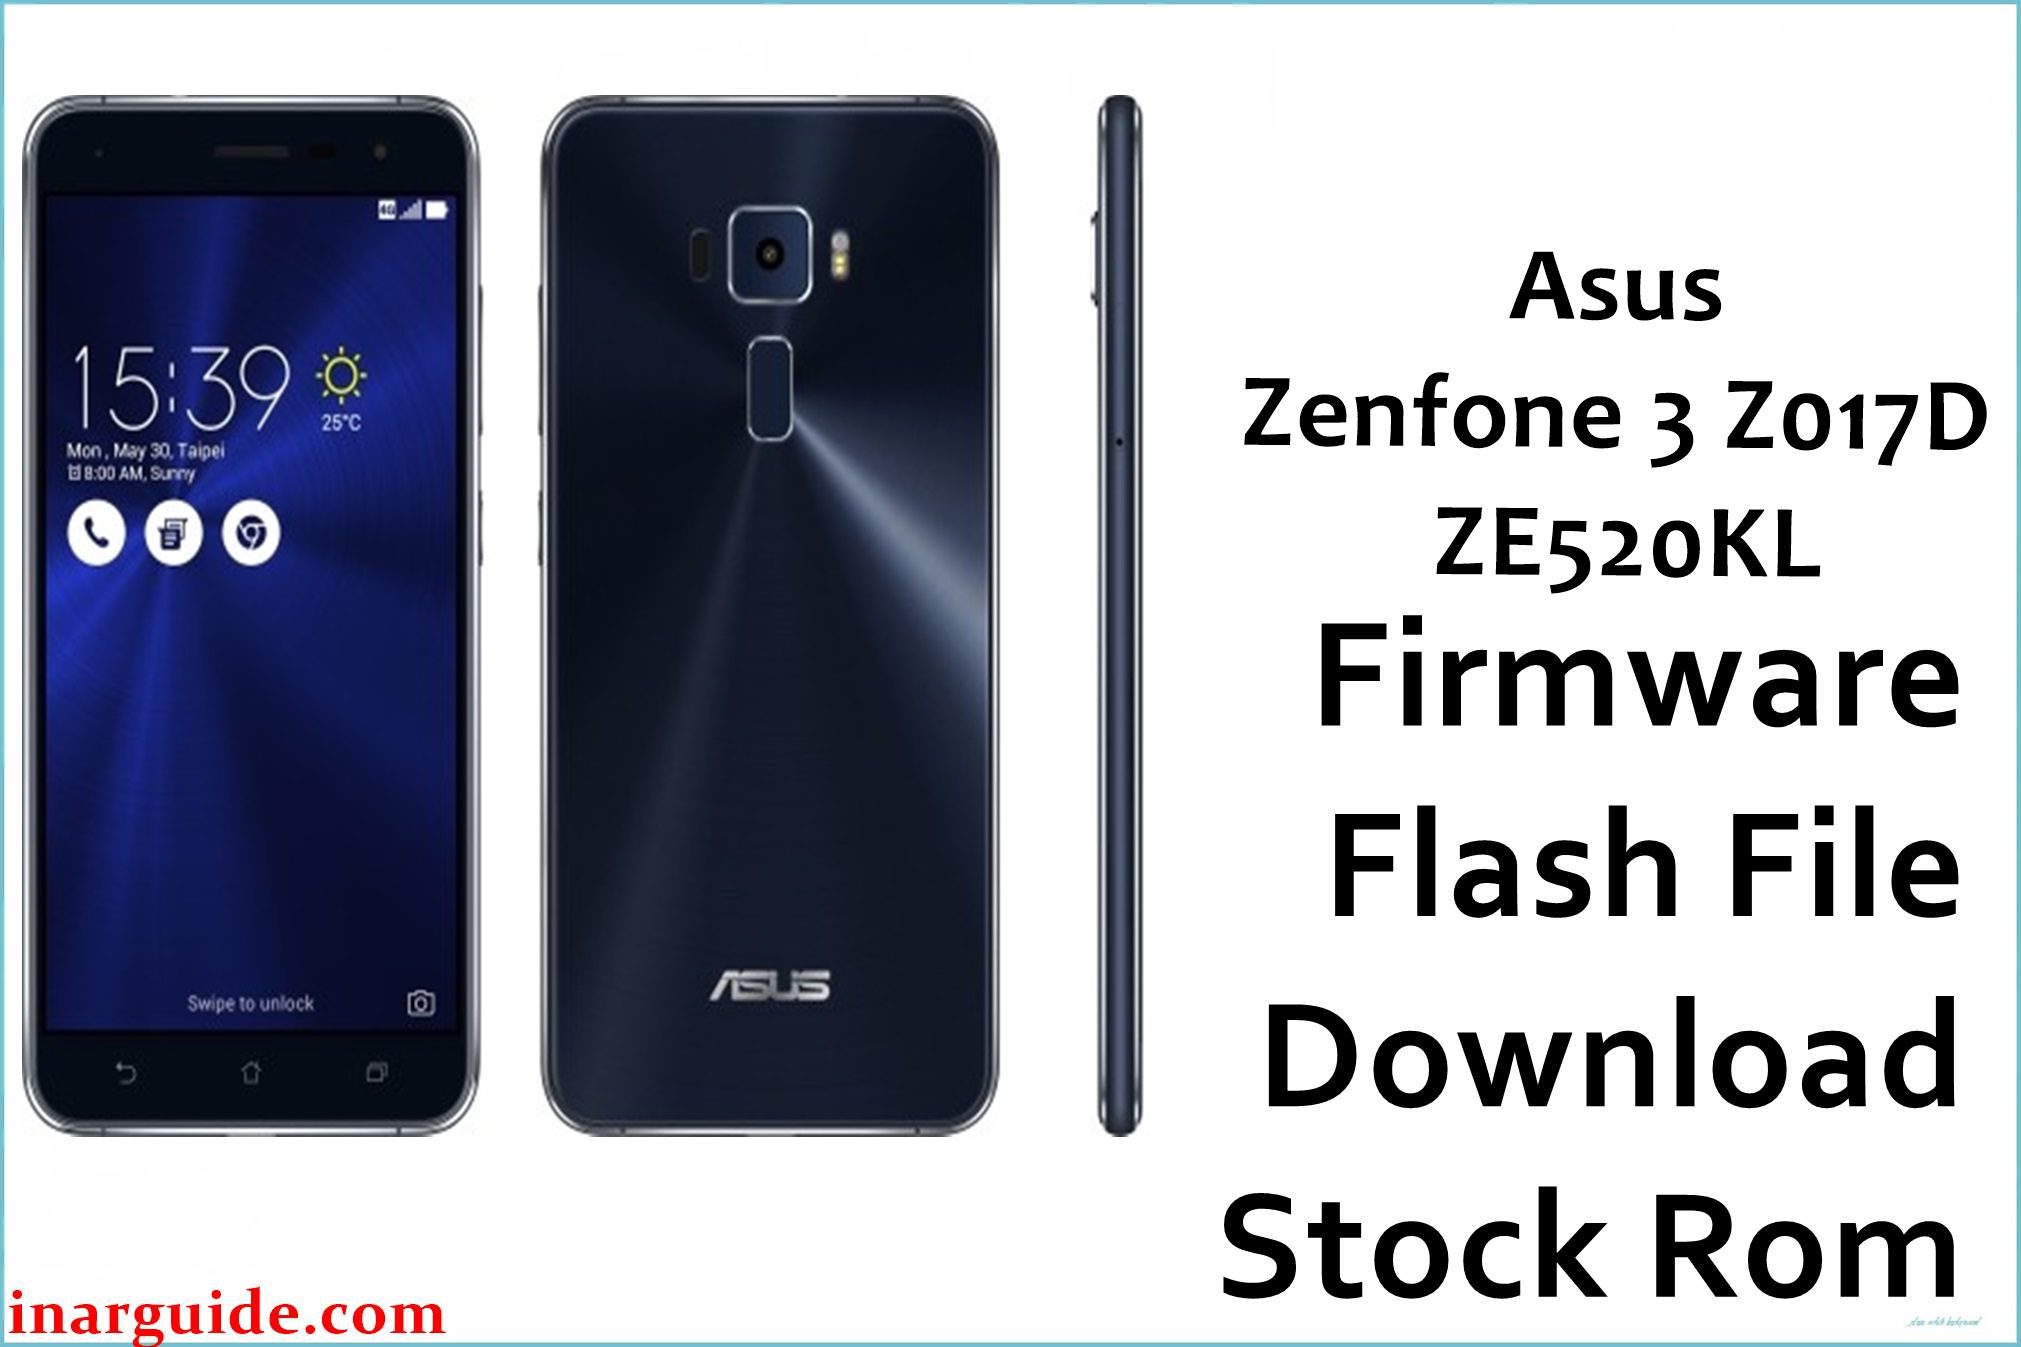 Asus Zenfone 3 Z017D ZE520KL